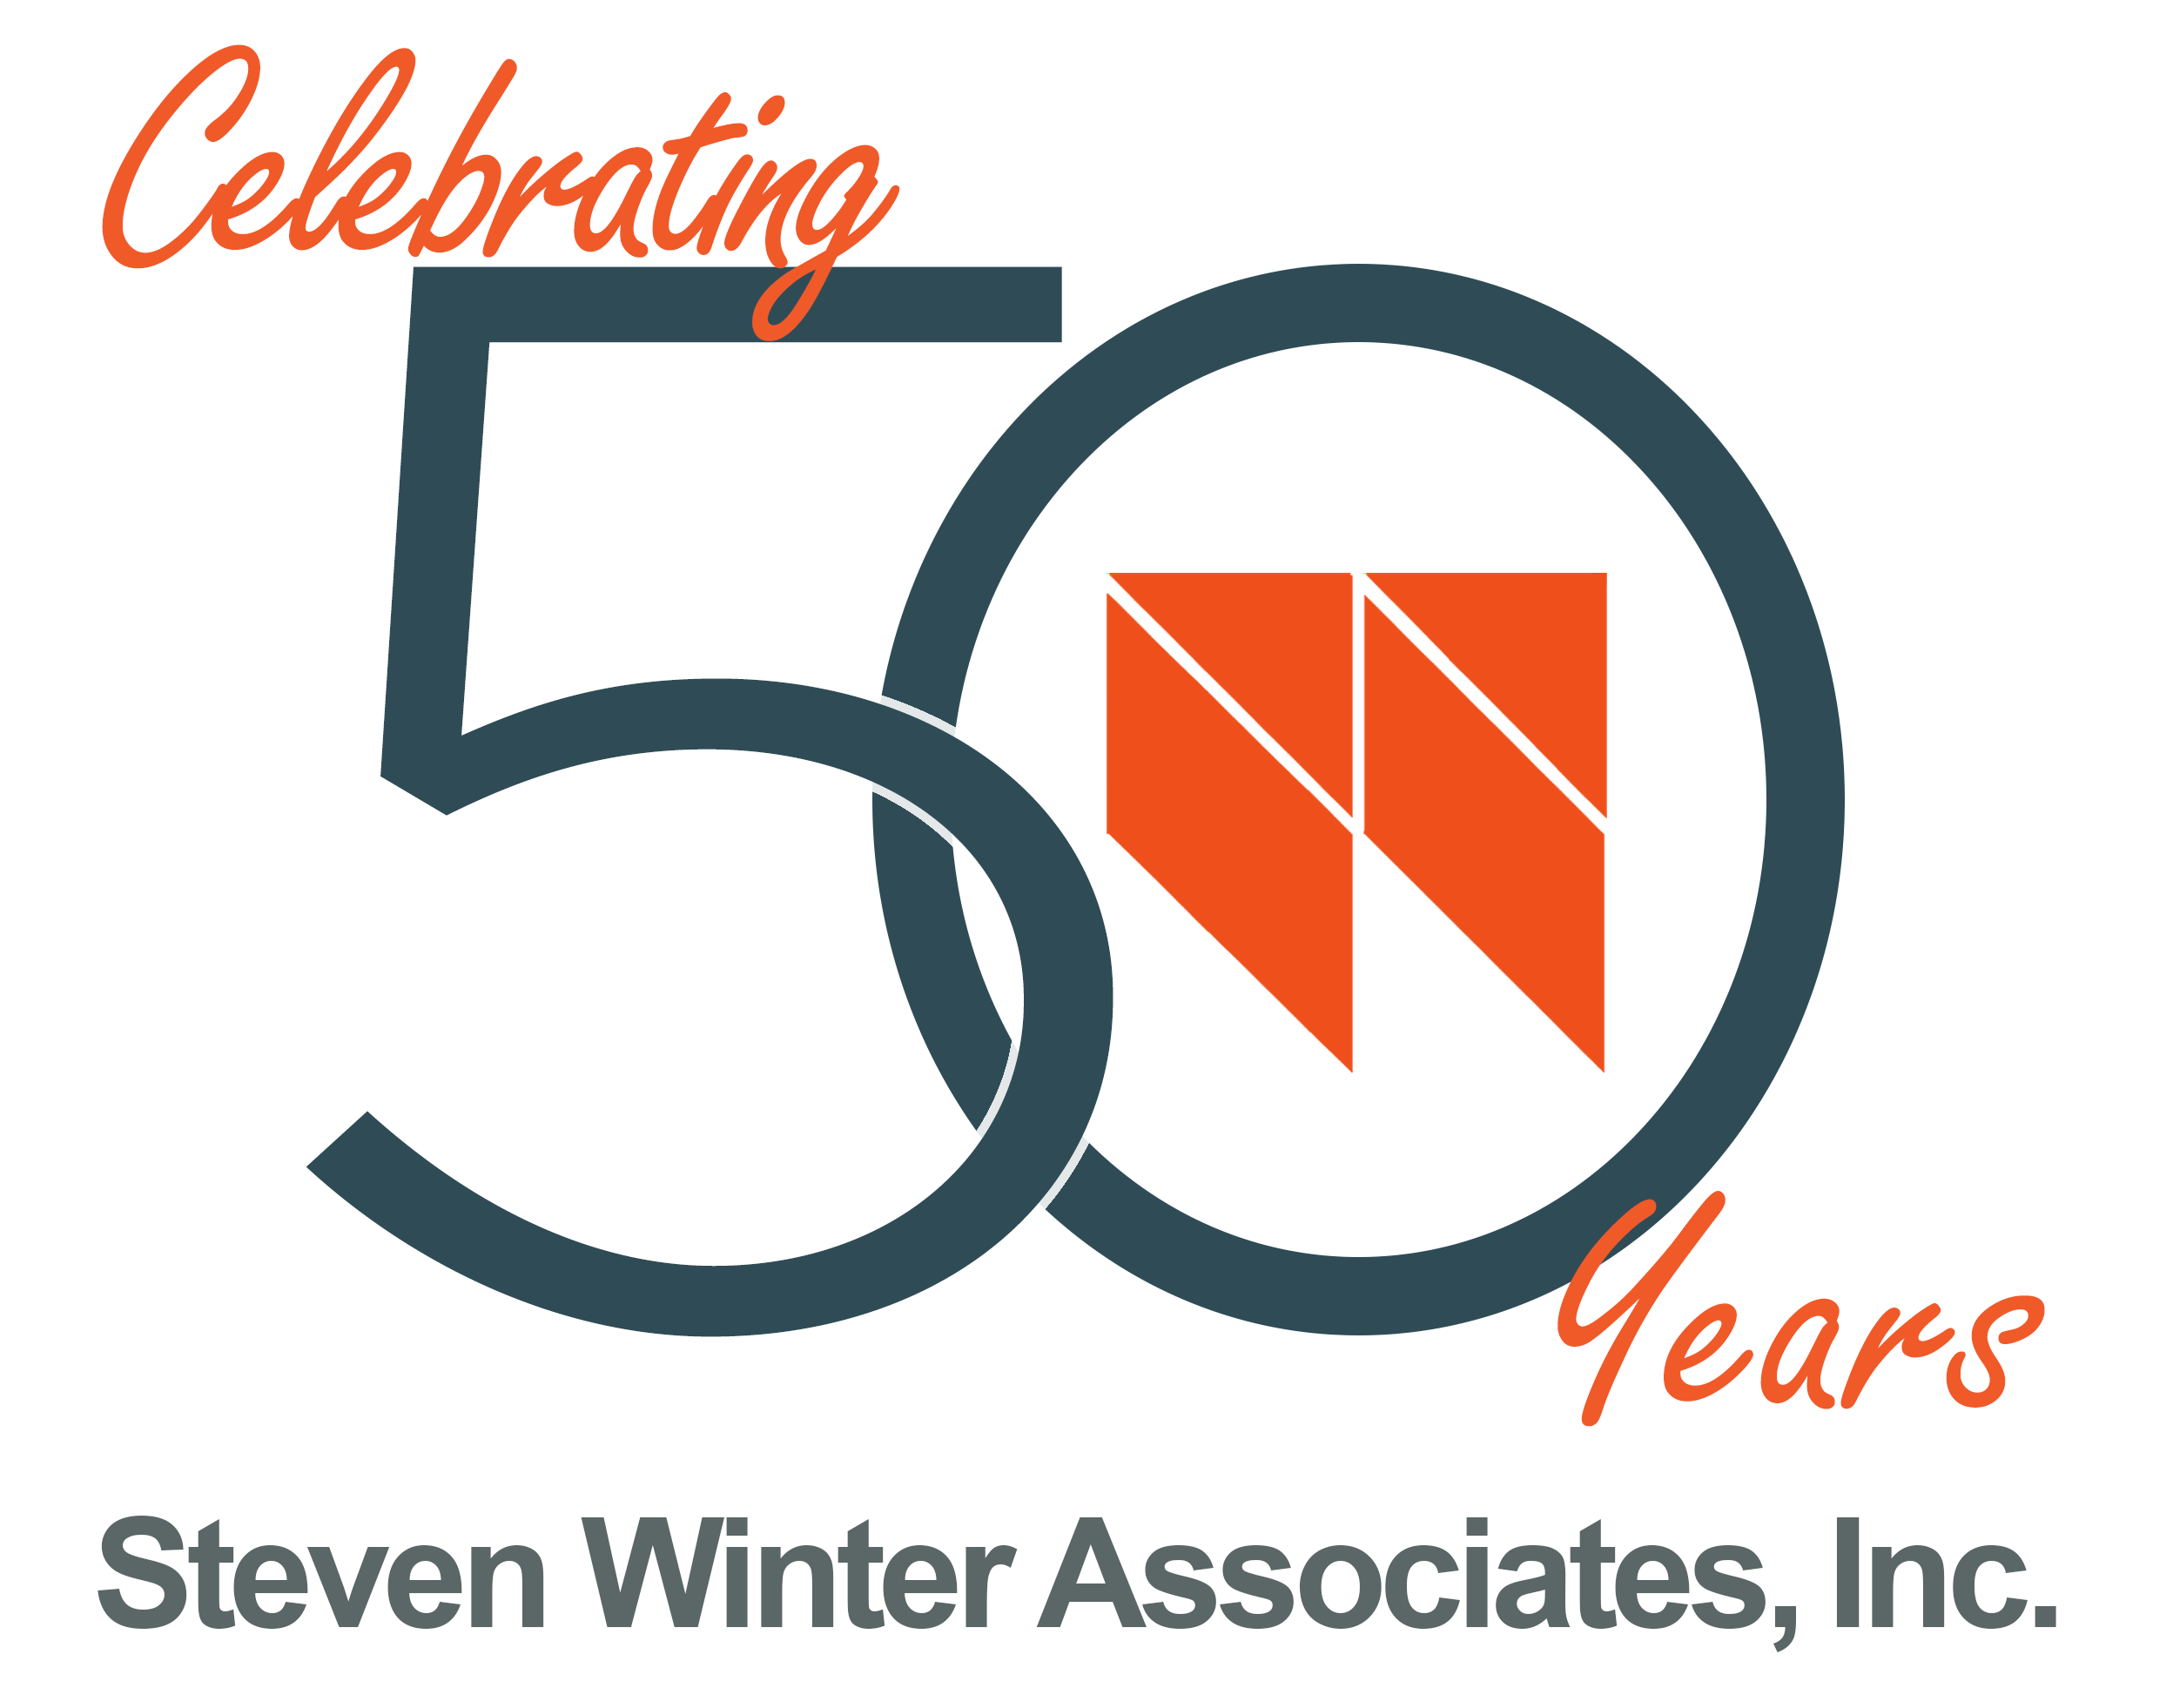 Steven Winter Associates fiftieth anniversary logo.